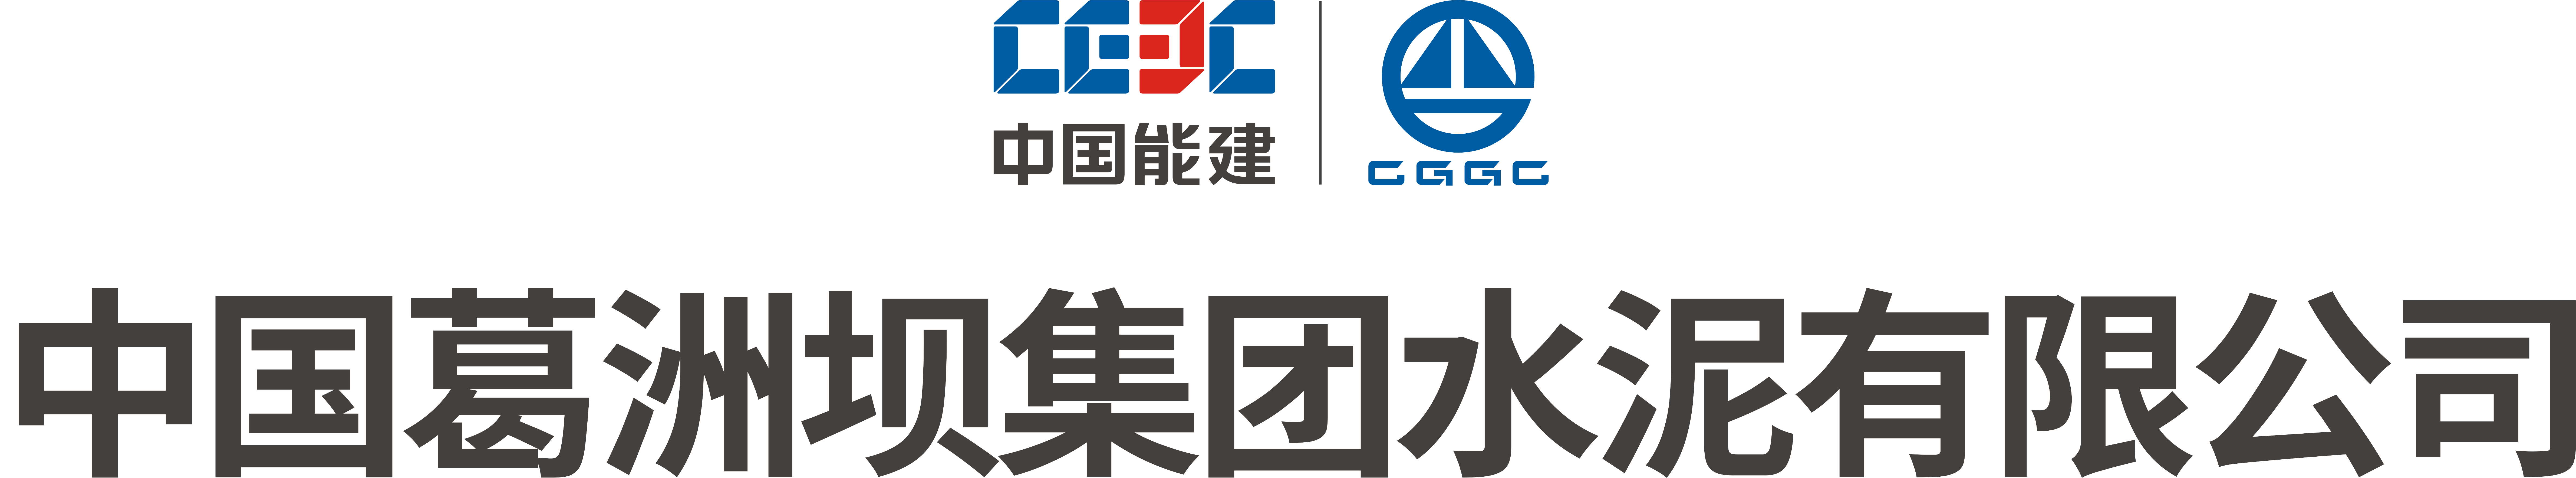 中国葛洲坝集团logo图片